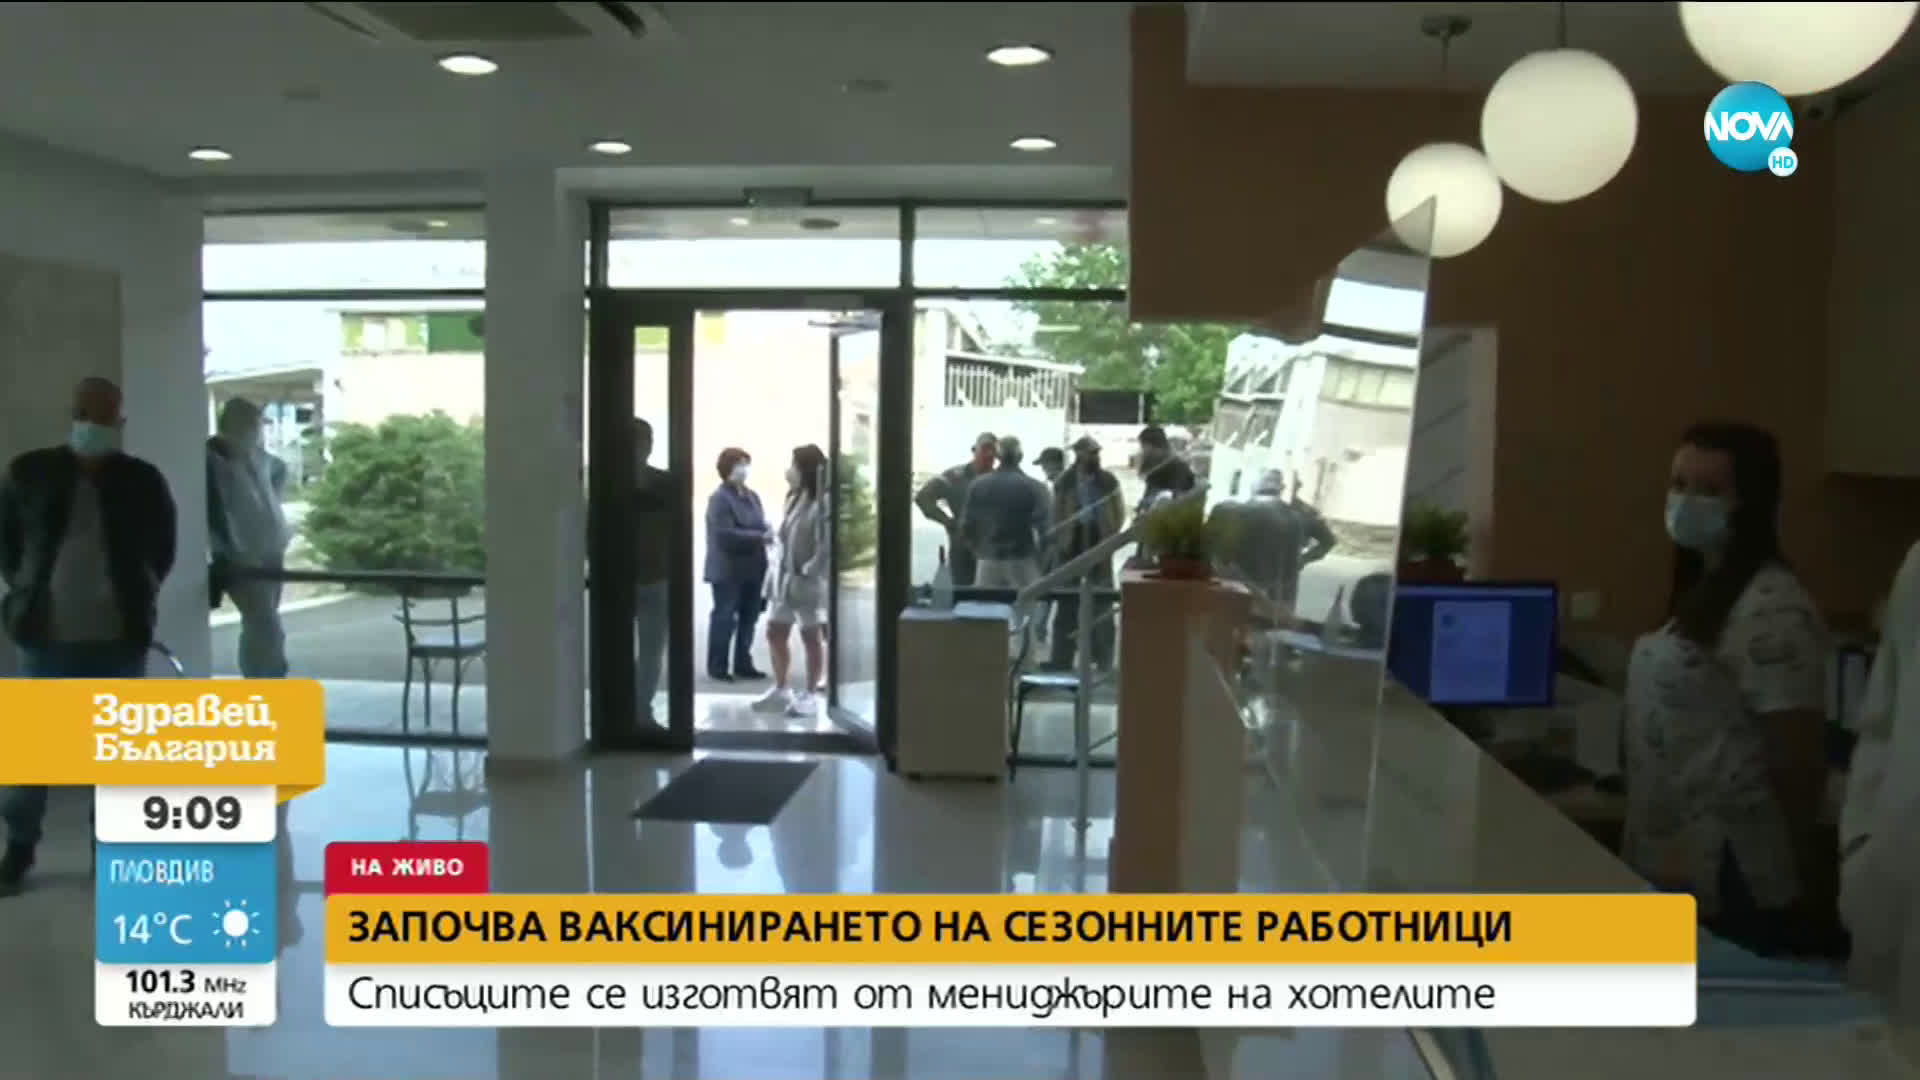 Започна ваксинирането на сезонните работници в курортите по Черноморието